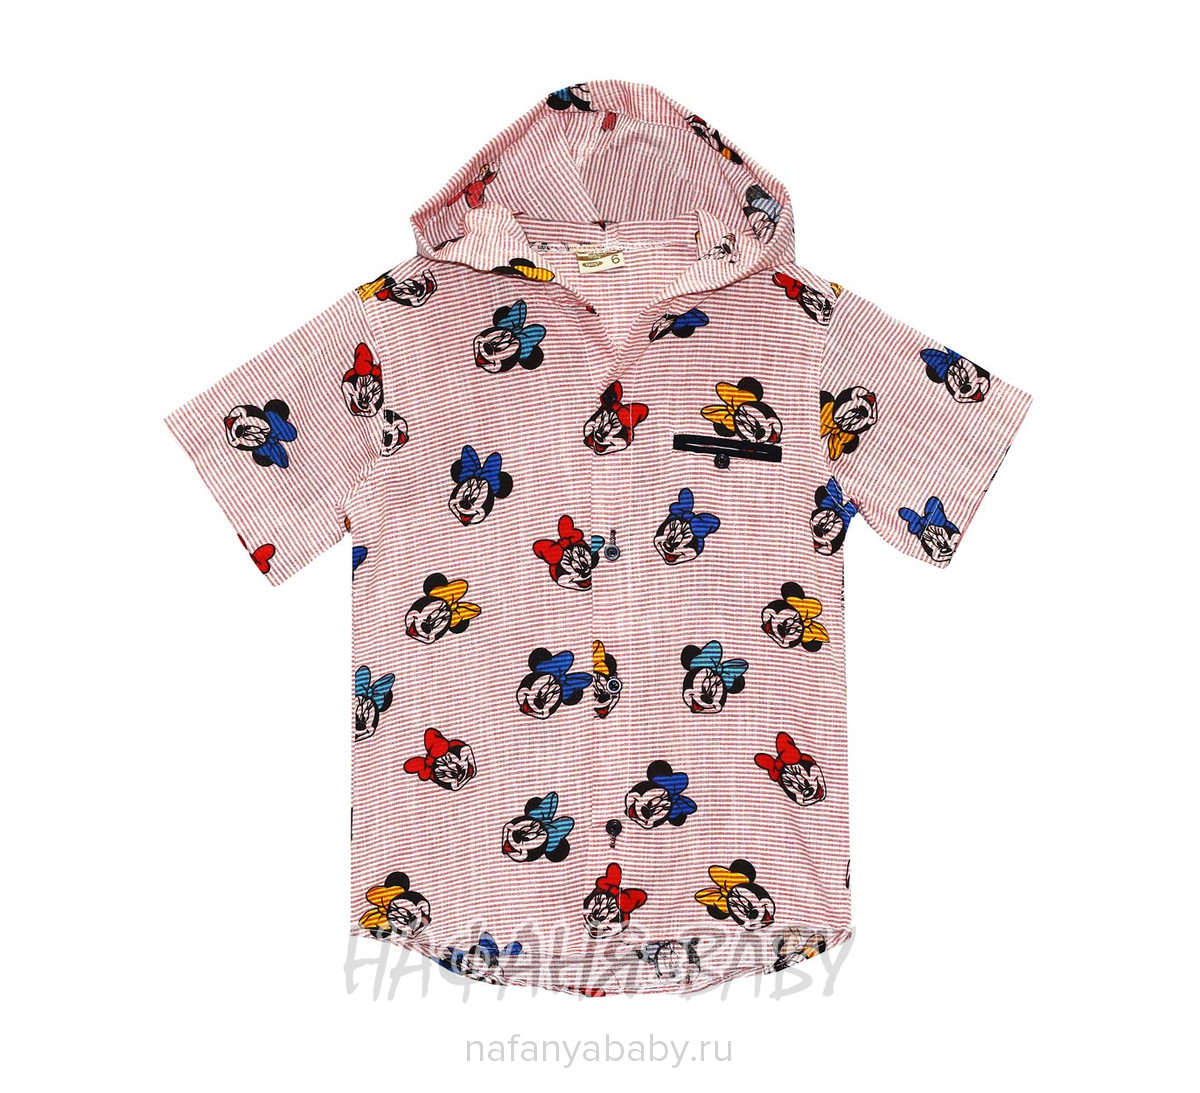 Детская рубашка с капюшоном GTR, купить в интернет магазине Нафаня. арт: 2582.